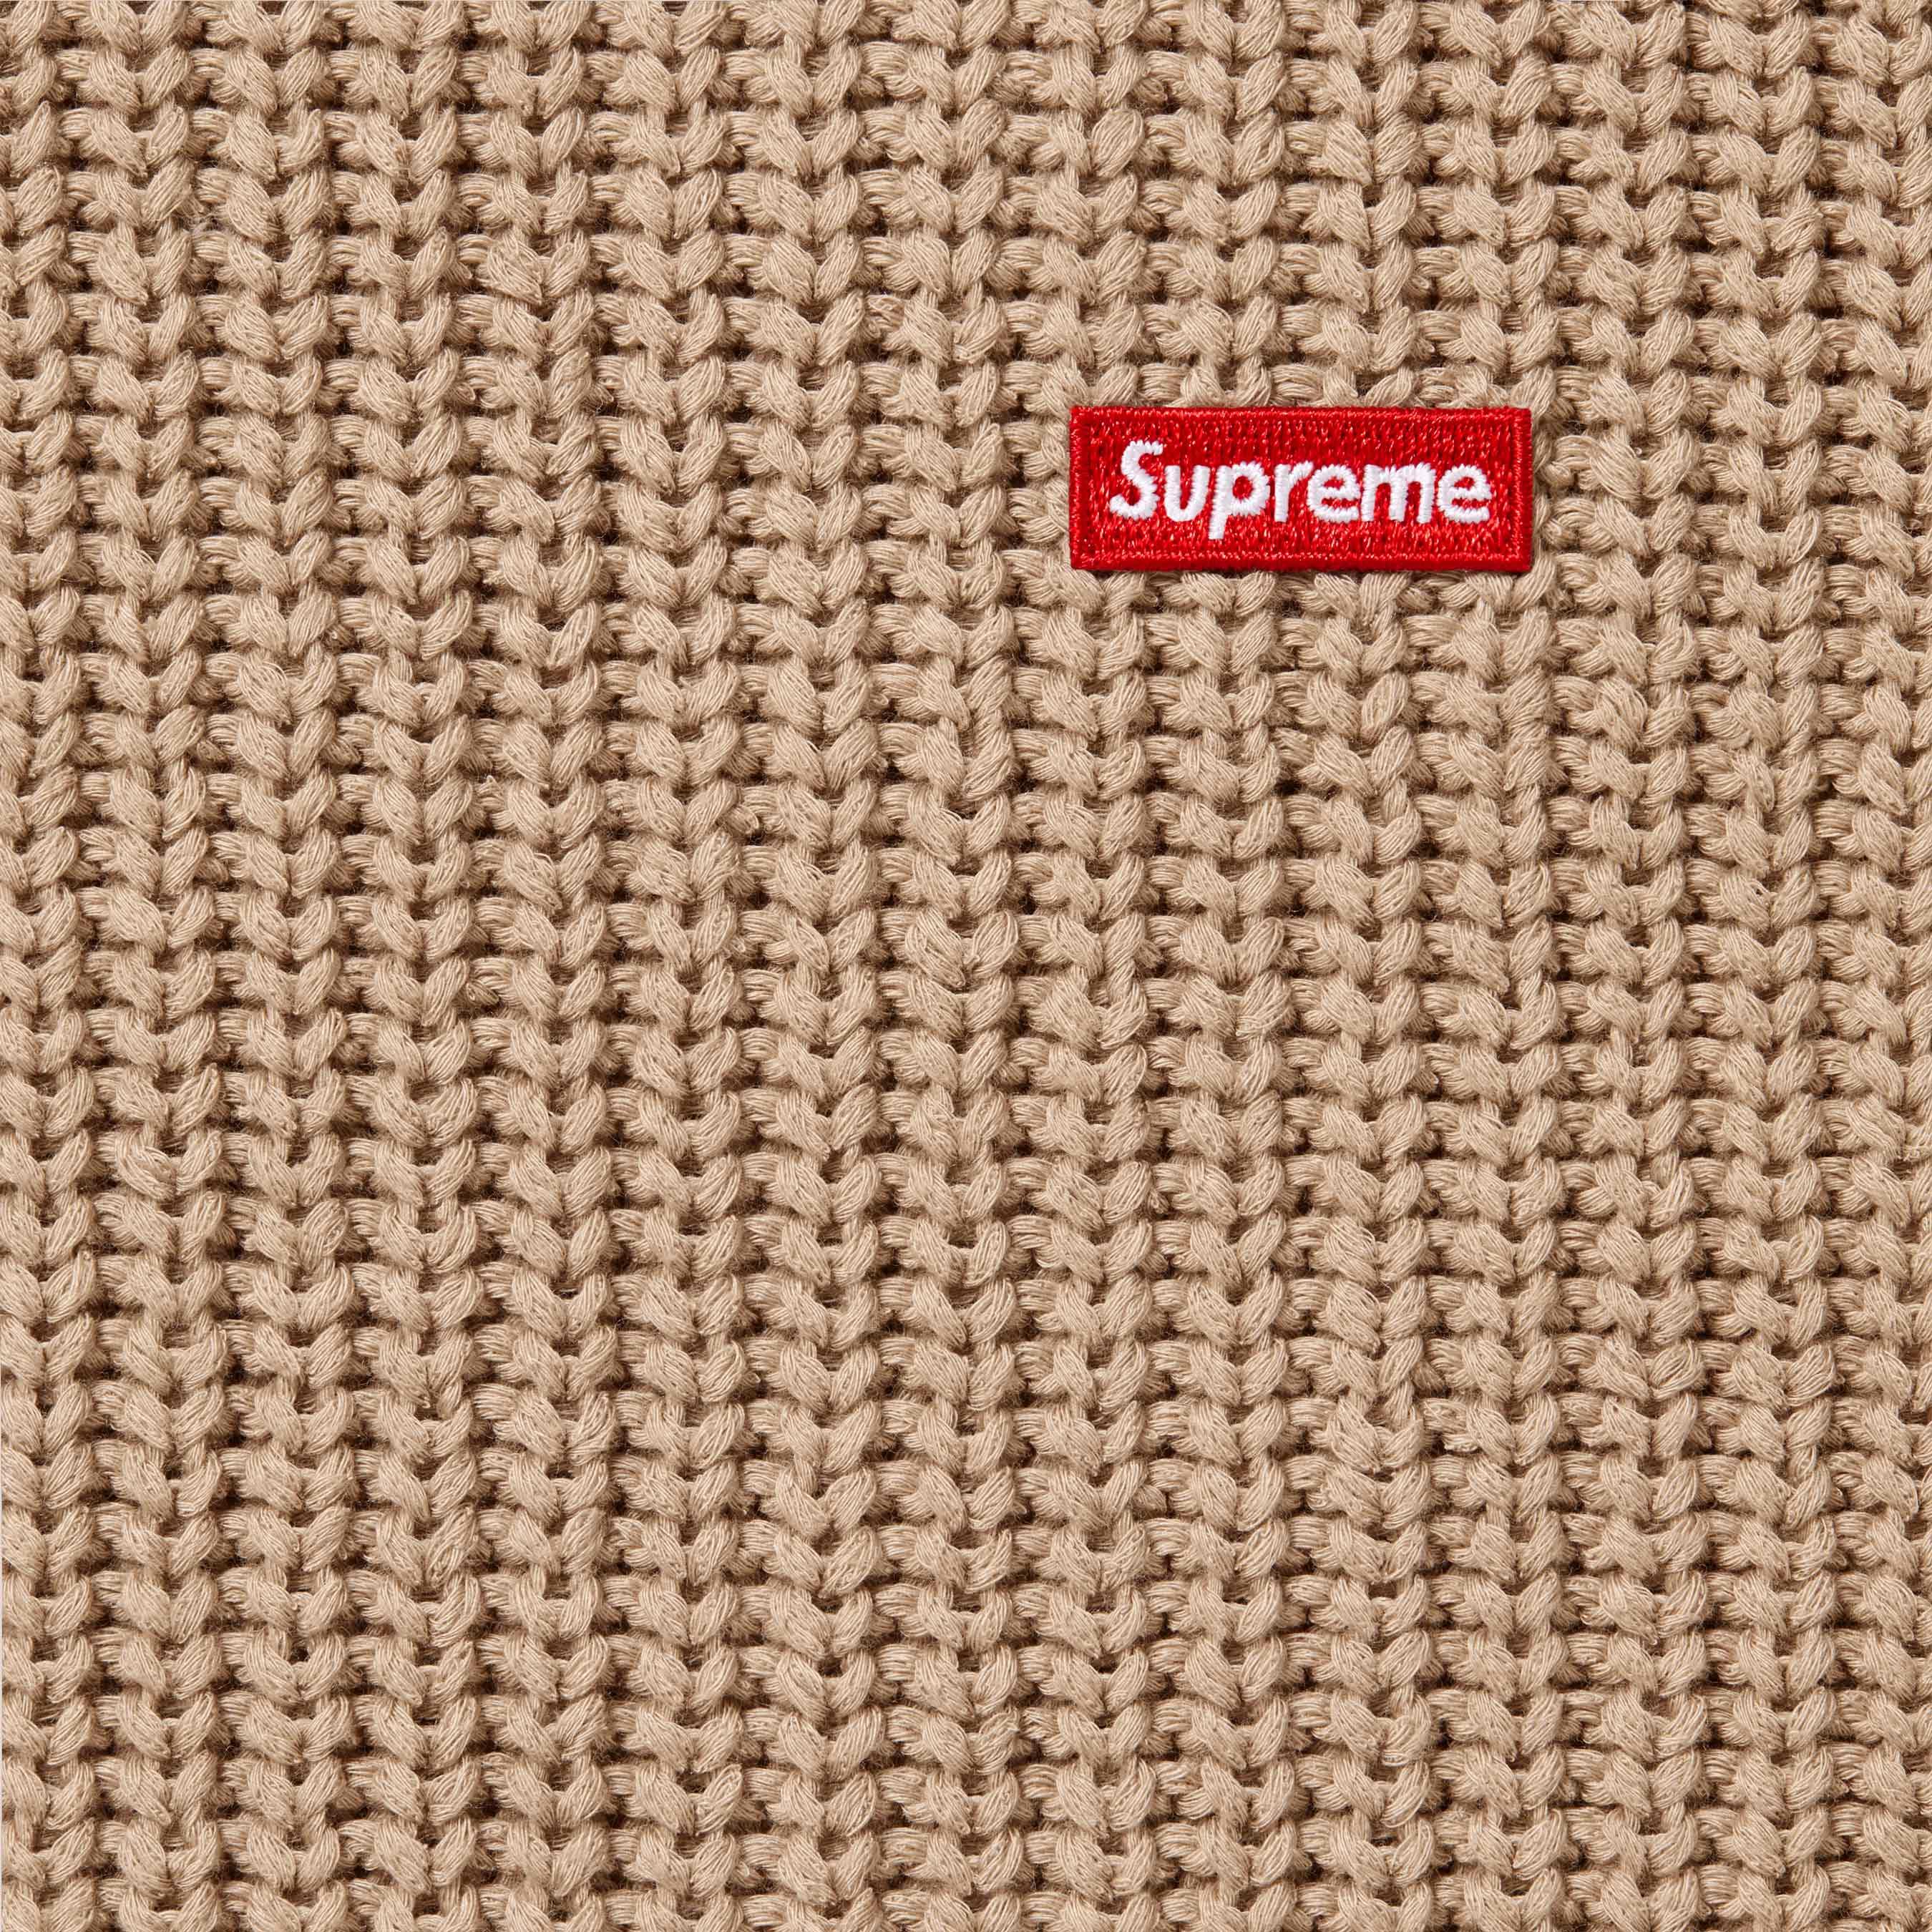 10,250円Supreme Small Box Ribbed Sweater